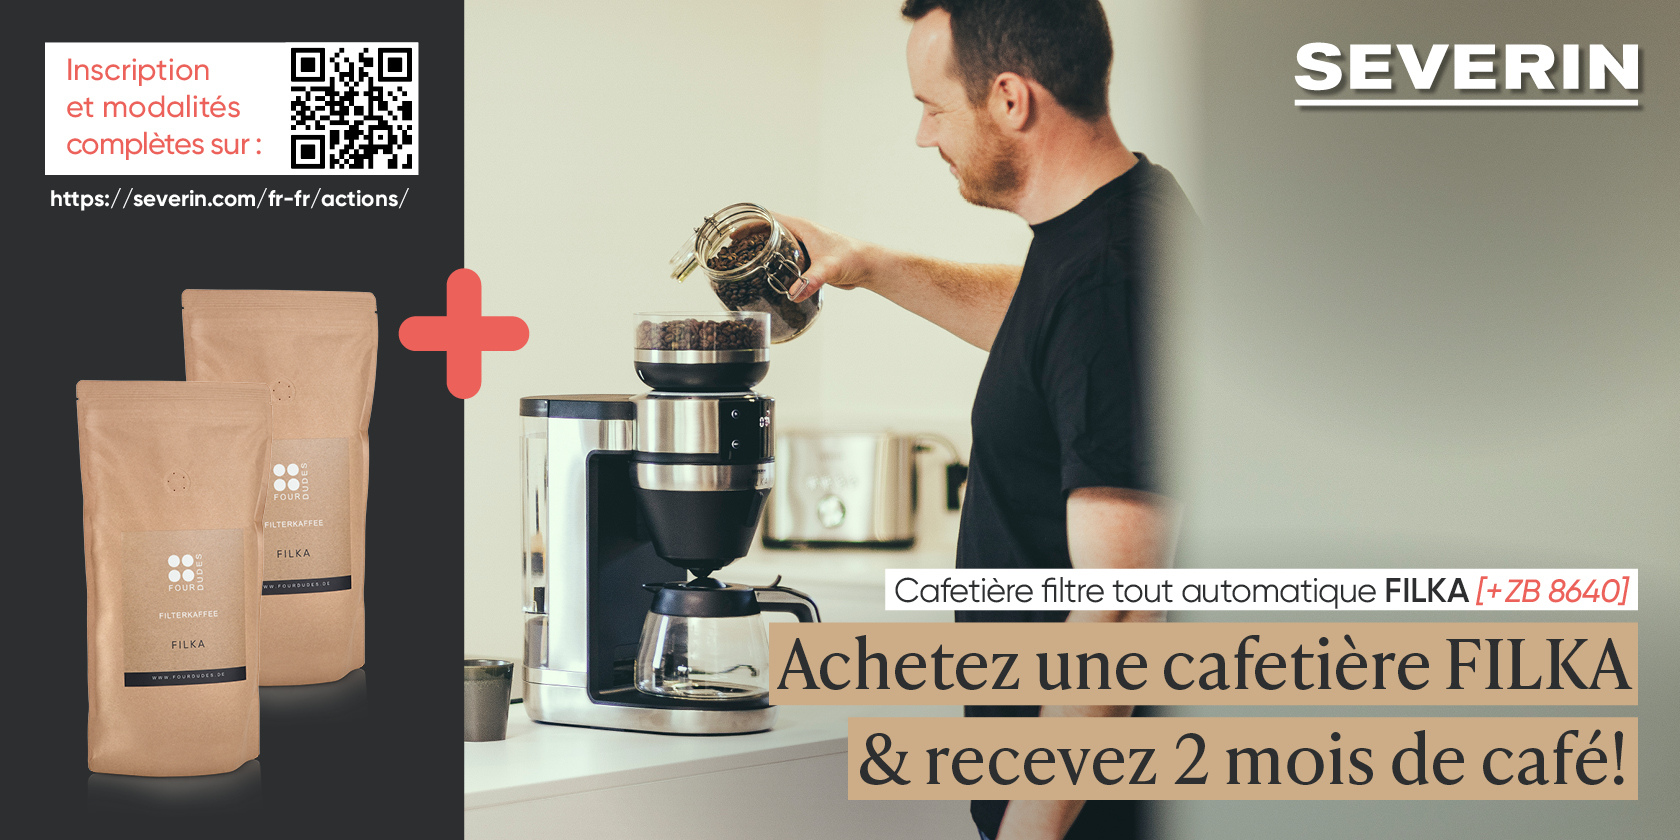 Cafetière filtre entièrement automatique FILKA KA 4850 - SEVERIN (Official)